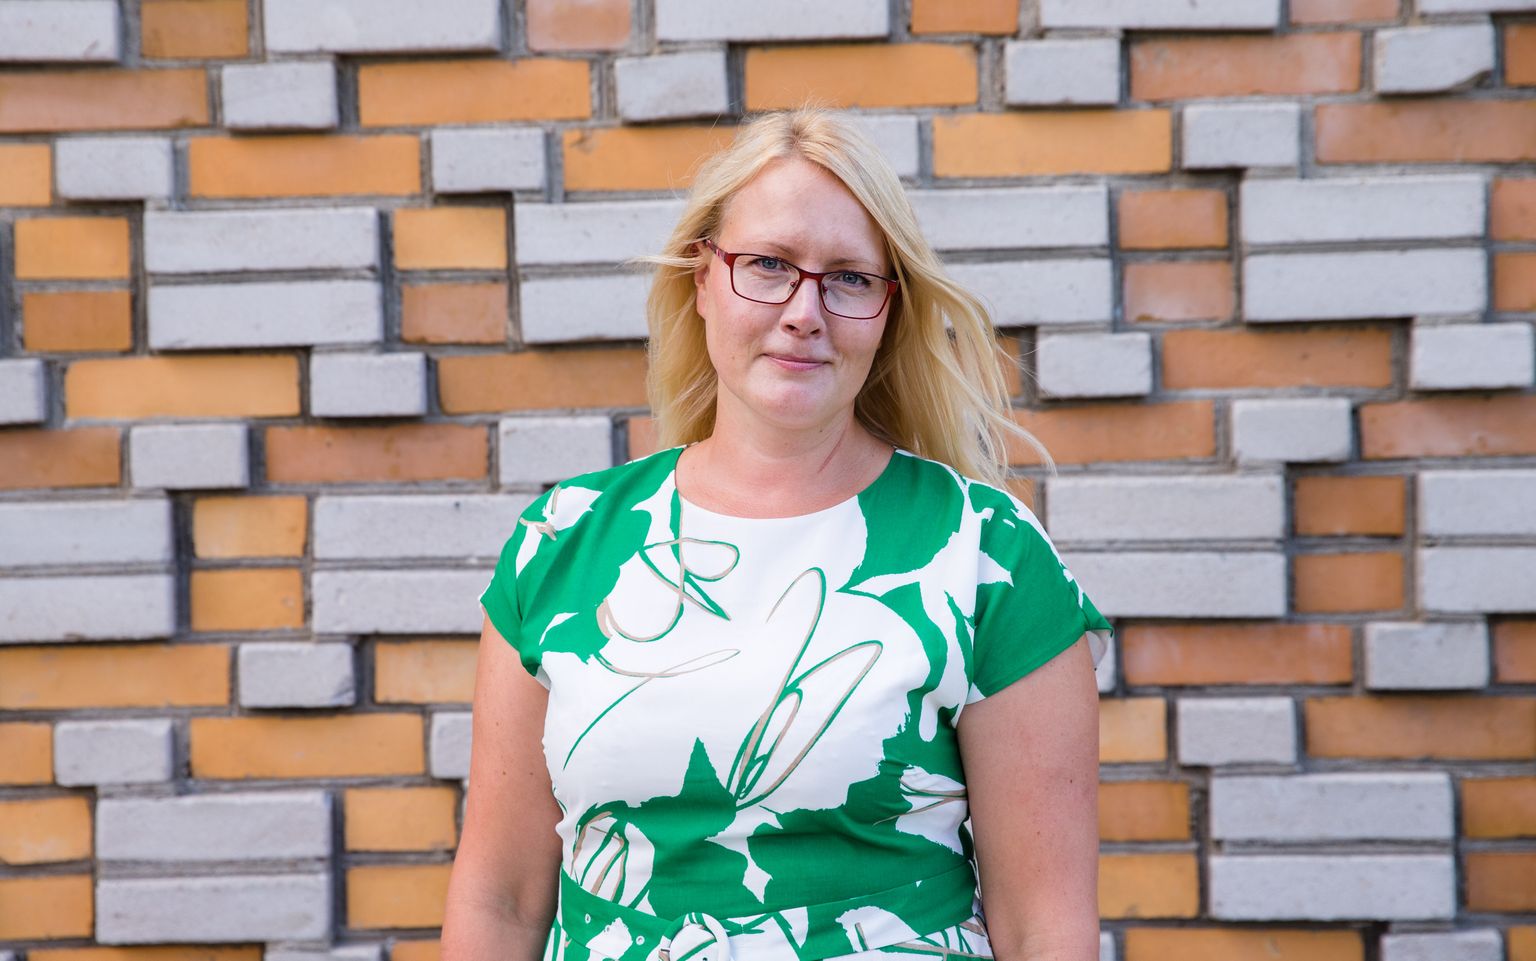 Tallinna Tehnikaülikooli teadlane dr Maarja Grossberg valiti Eesti Noorte Teaduste Akadeemia uueks presidendiks.